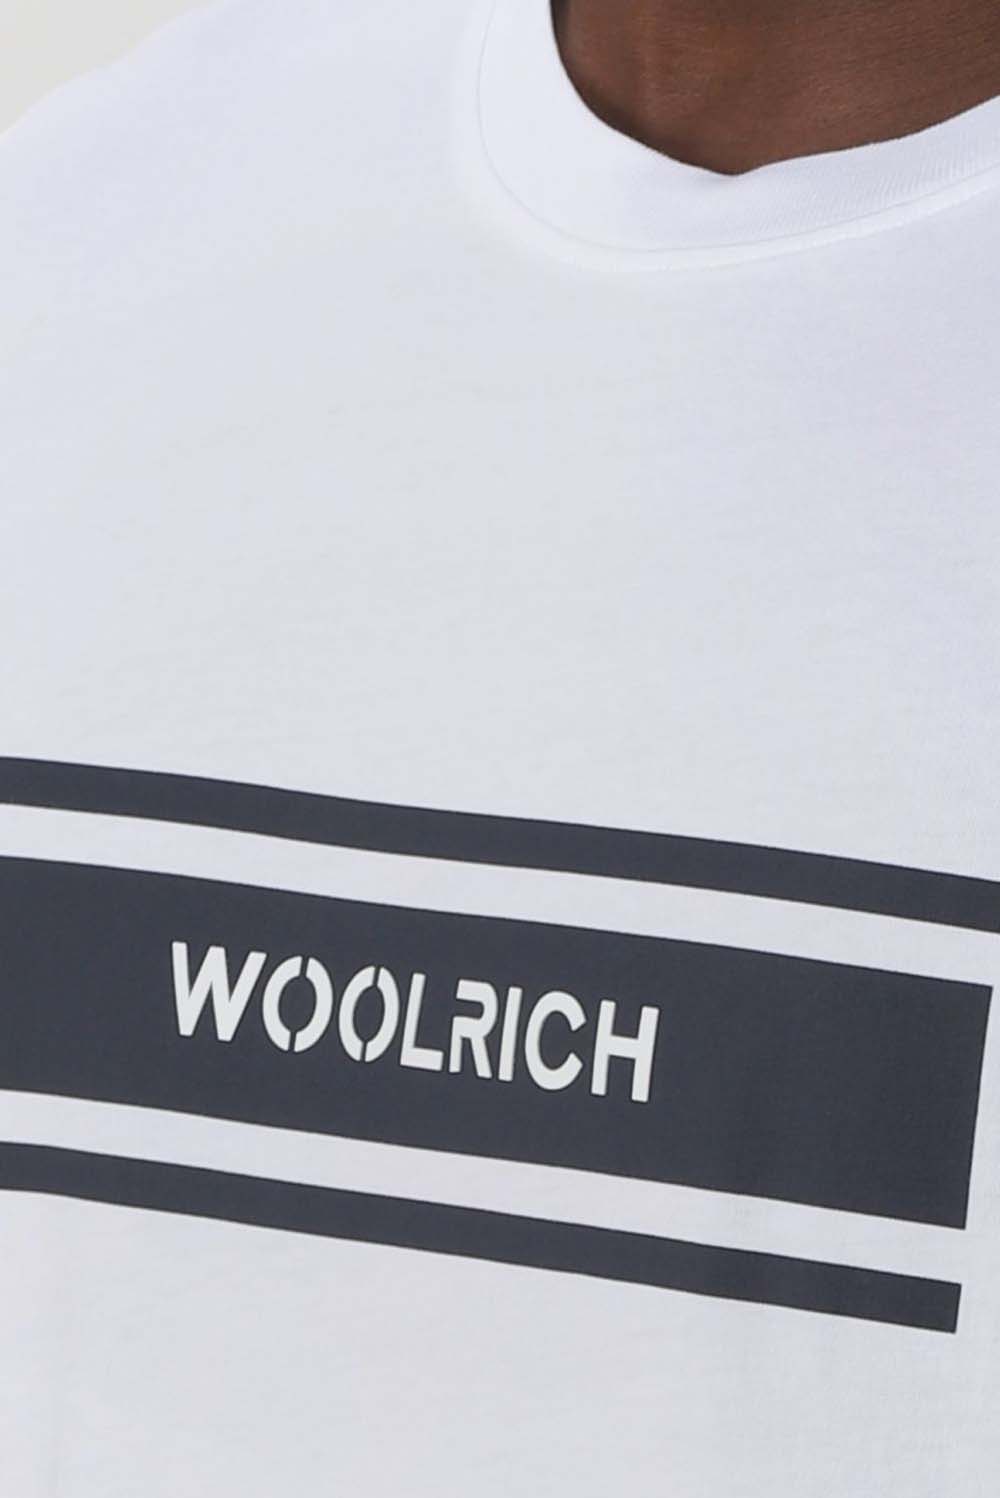  Woolrich Maglietta Logo Bright White Uomo - 3